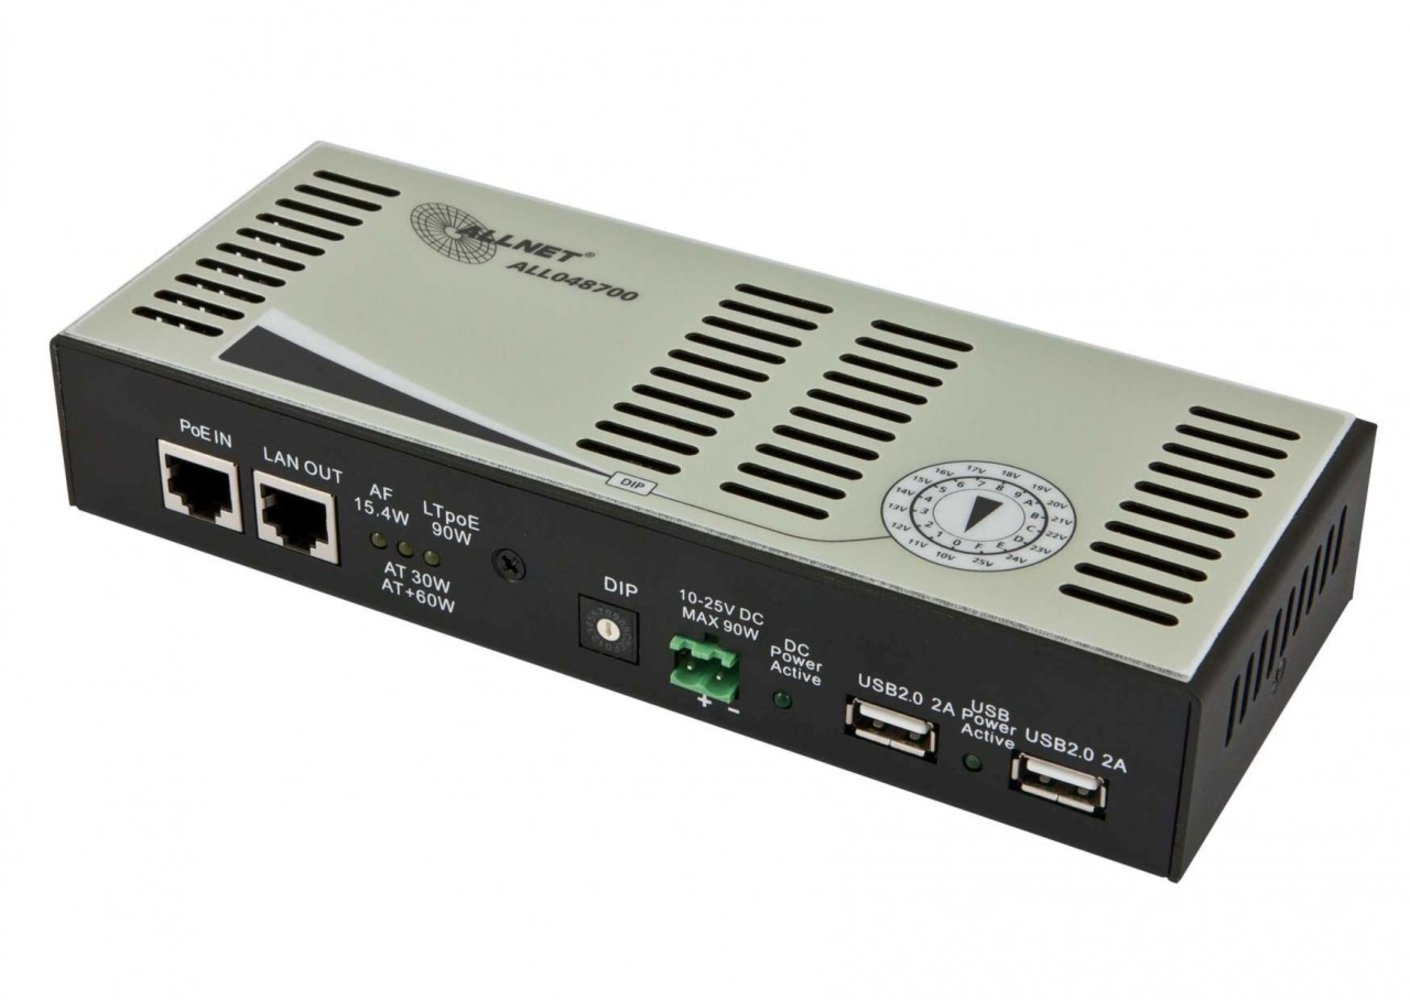 ALLNET ALL048700 - Hochleistungs-Splitter HPoE 90W mit 10-25V und 2x USB 2.0 je 10